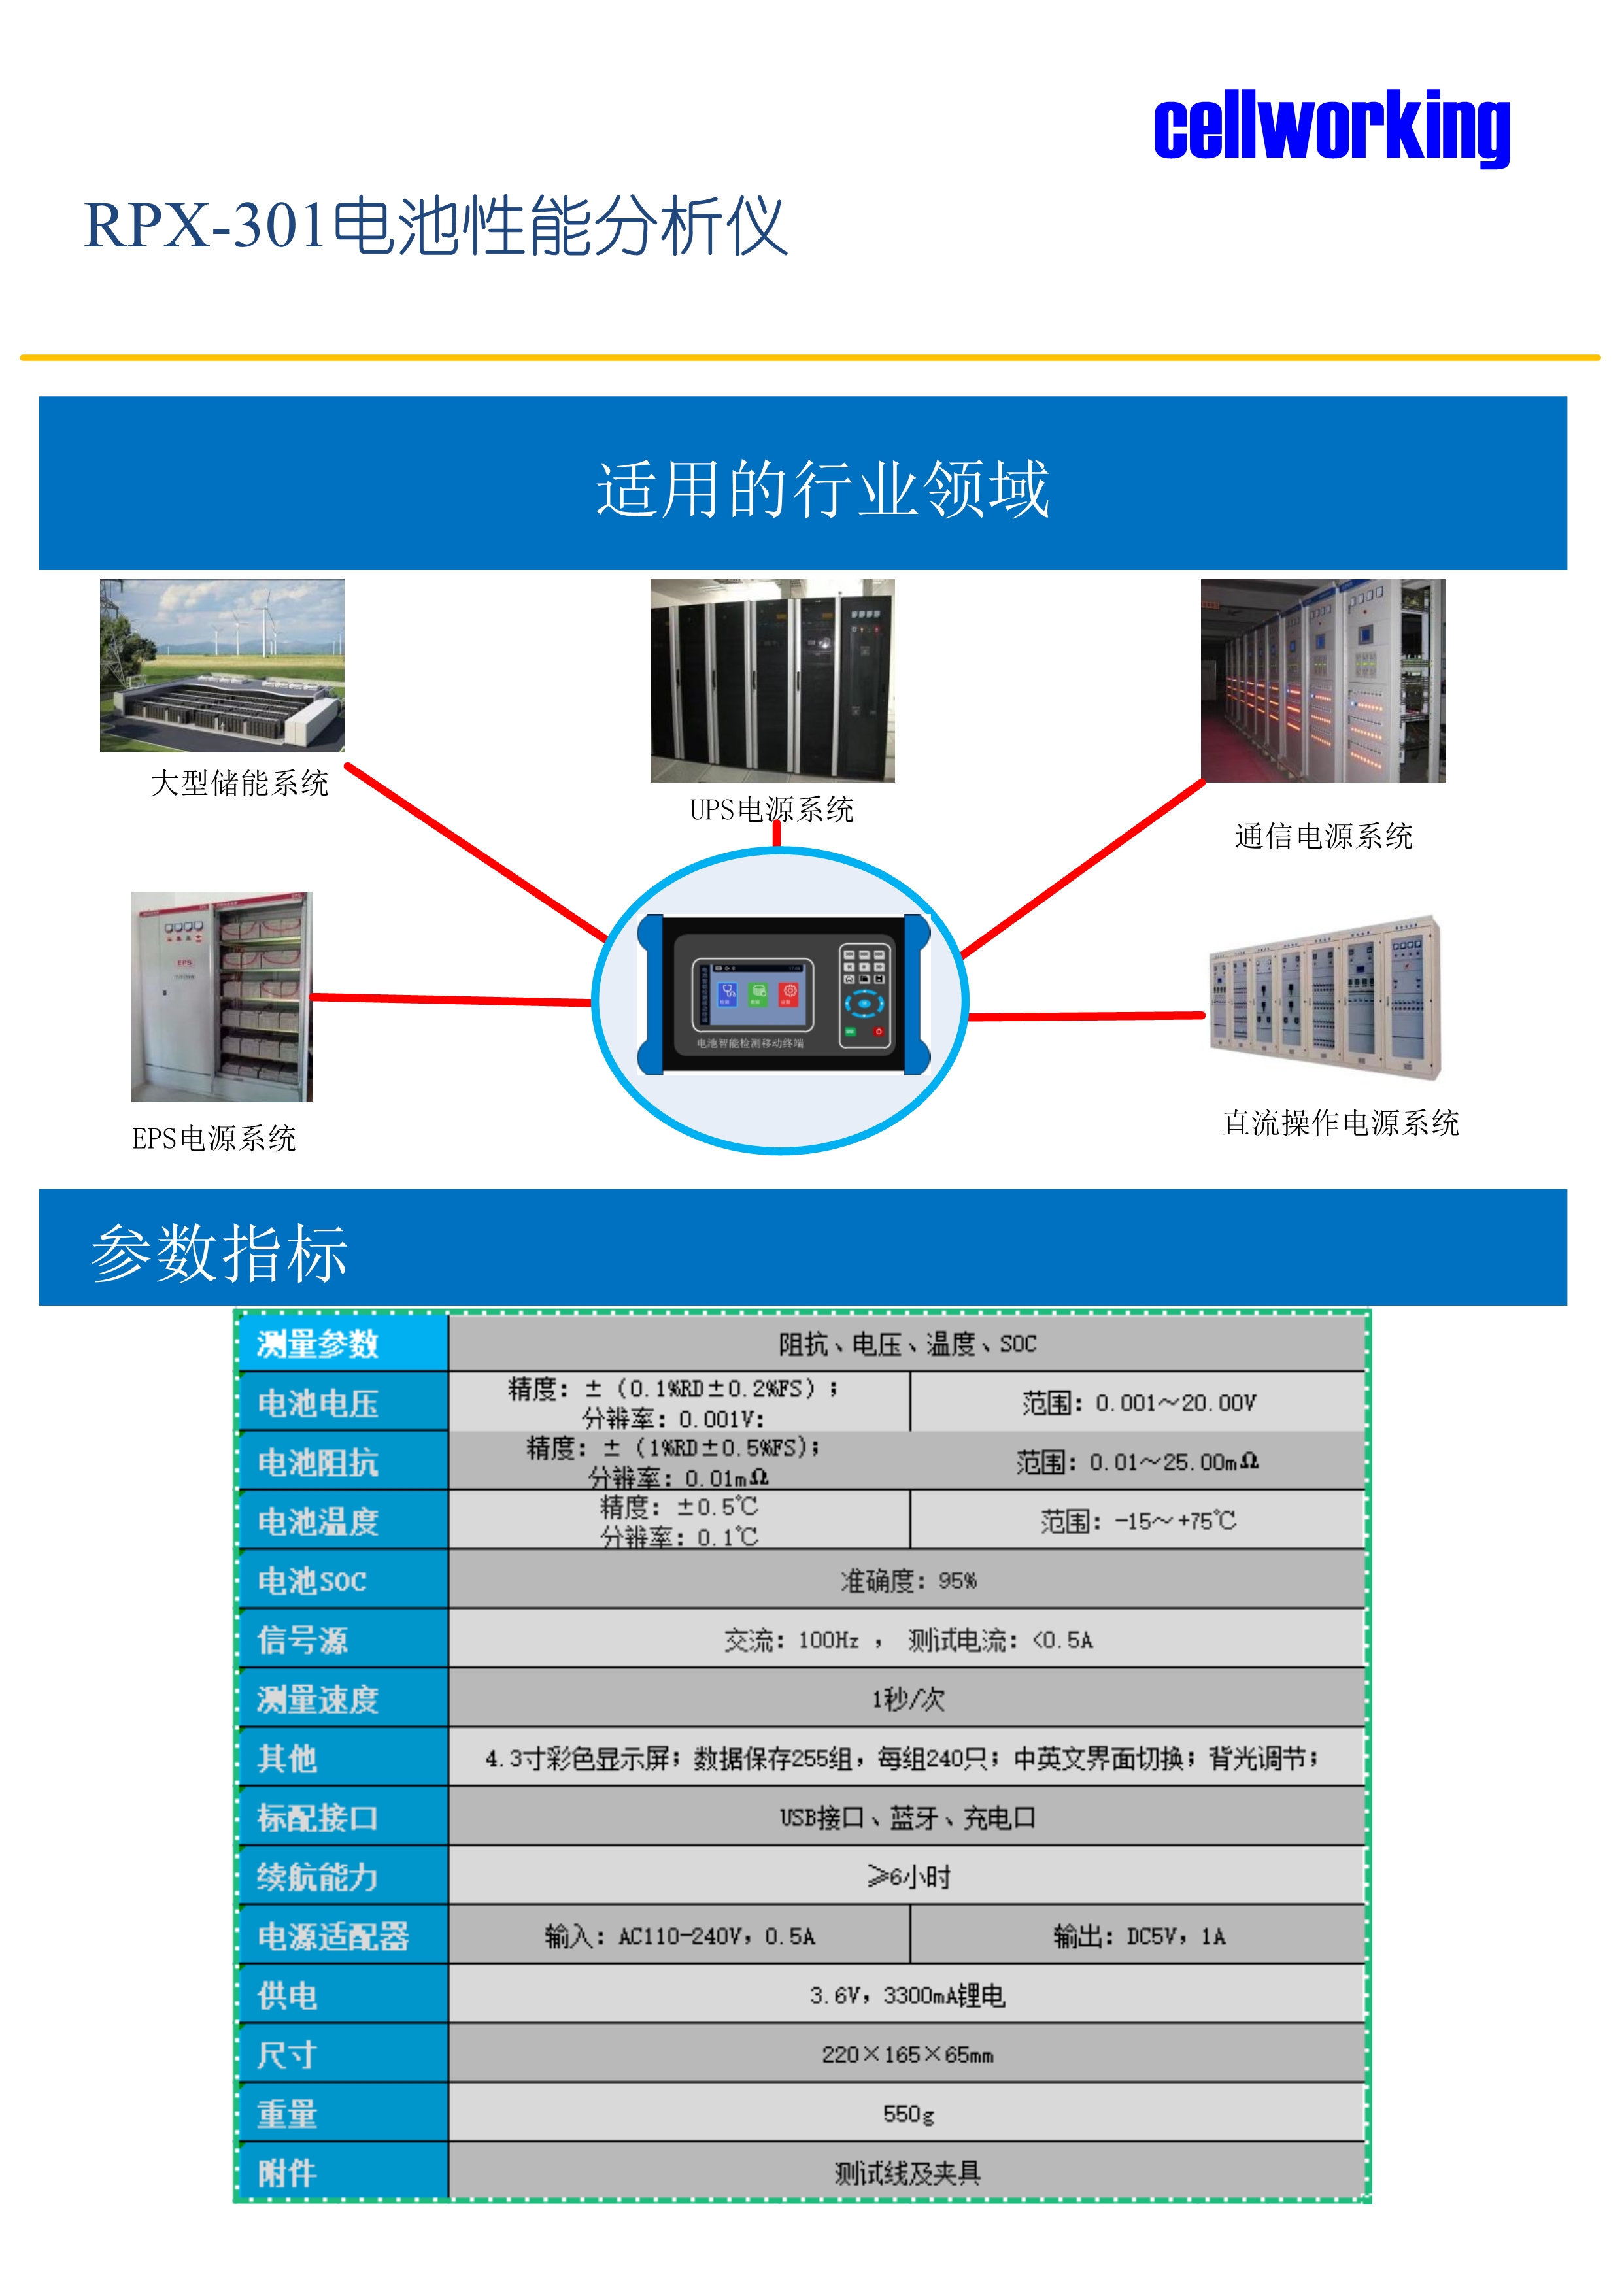 RPX301电池性能分析仪